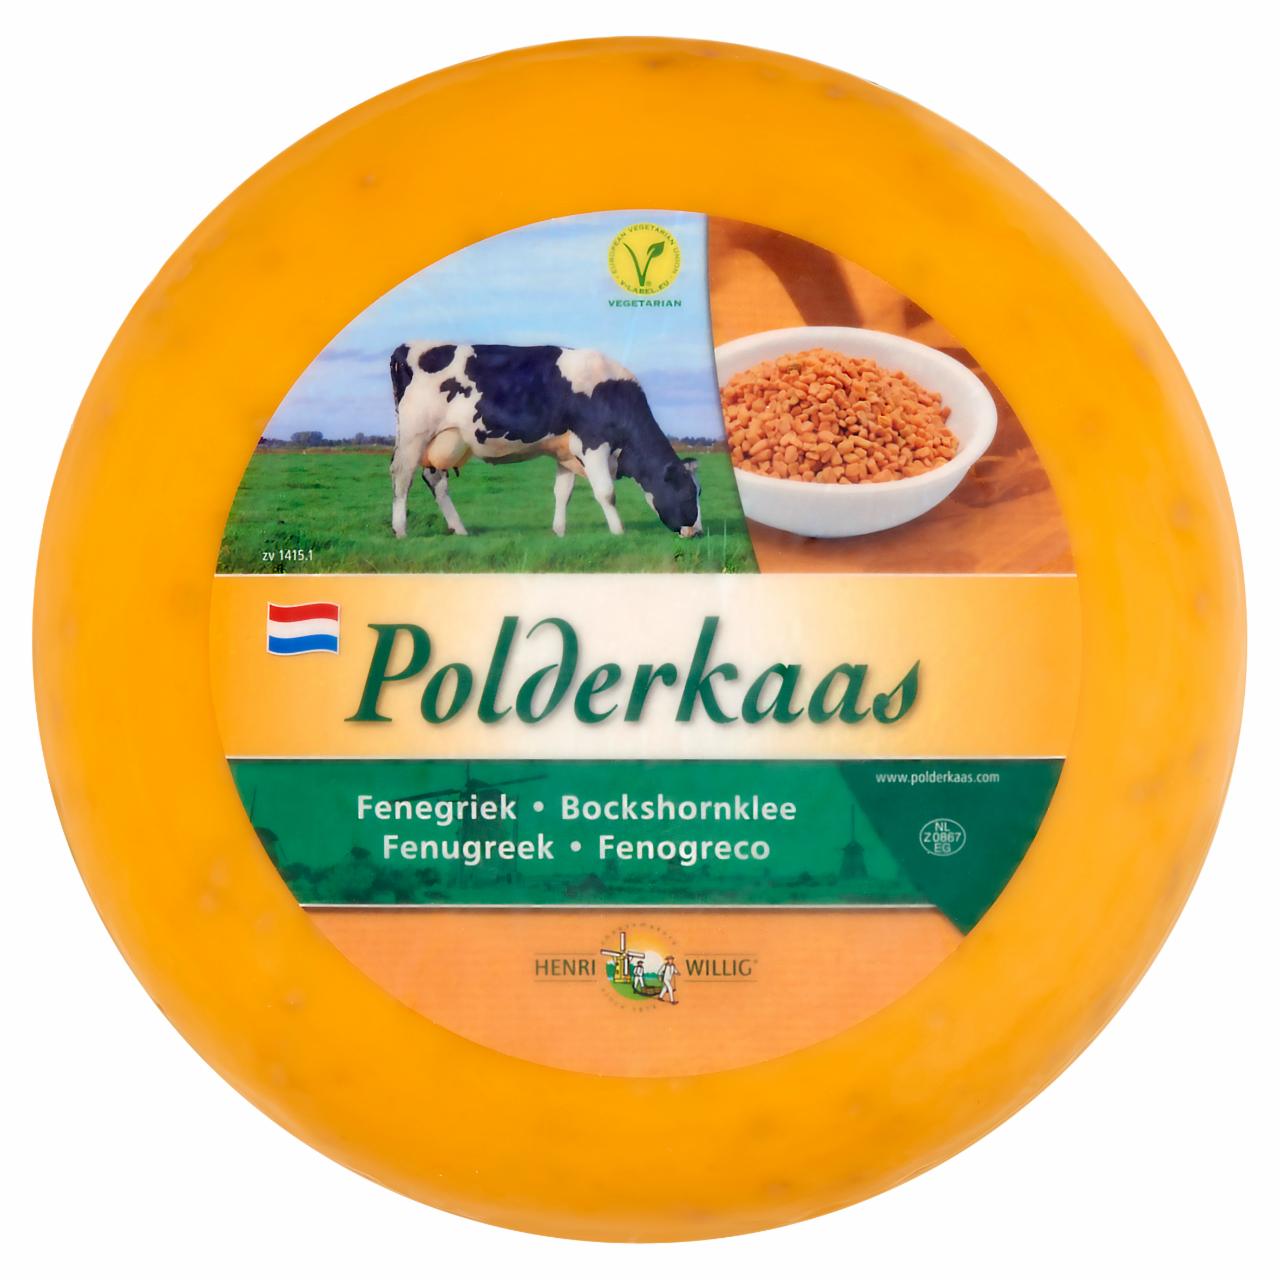 Képek - Polderkaas holland zsíros, félkemény gouda sajt, görögszénával